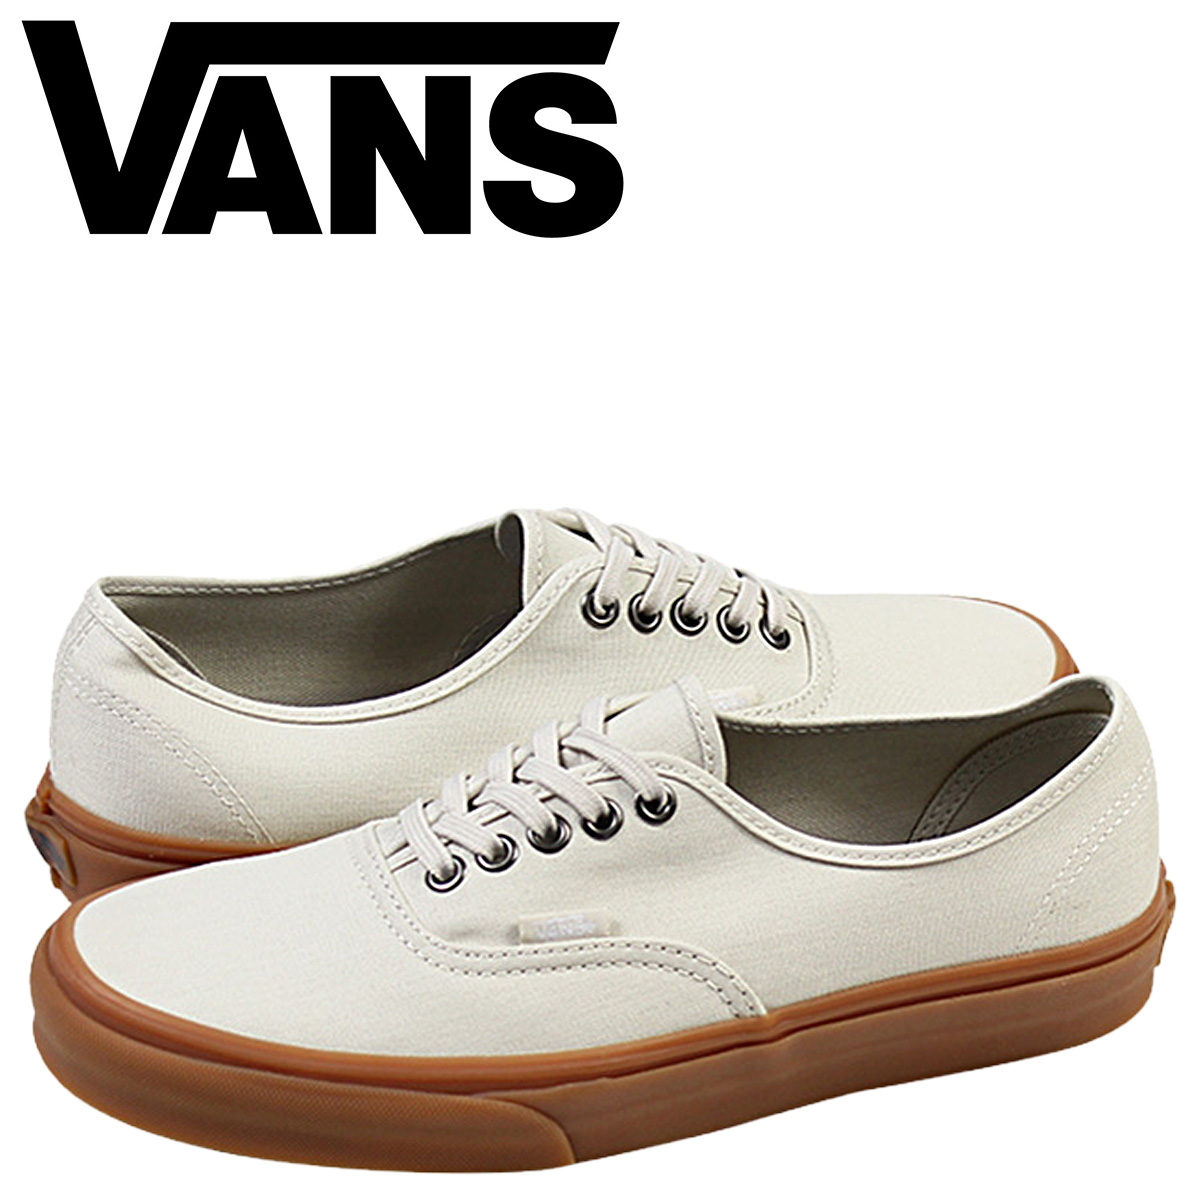 vans shoes white gum sole